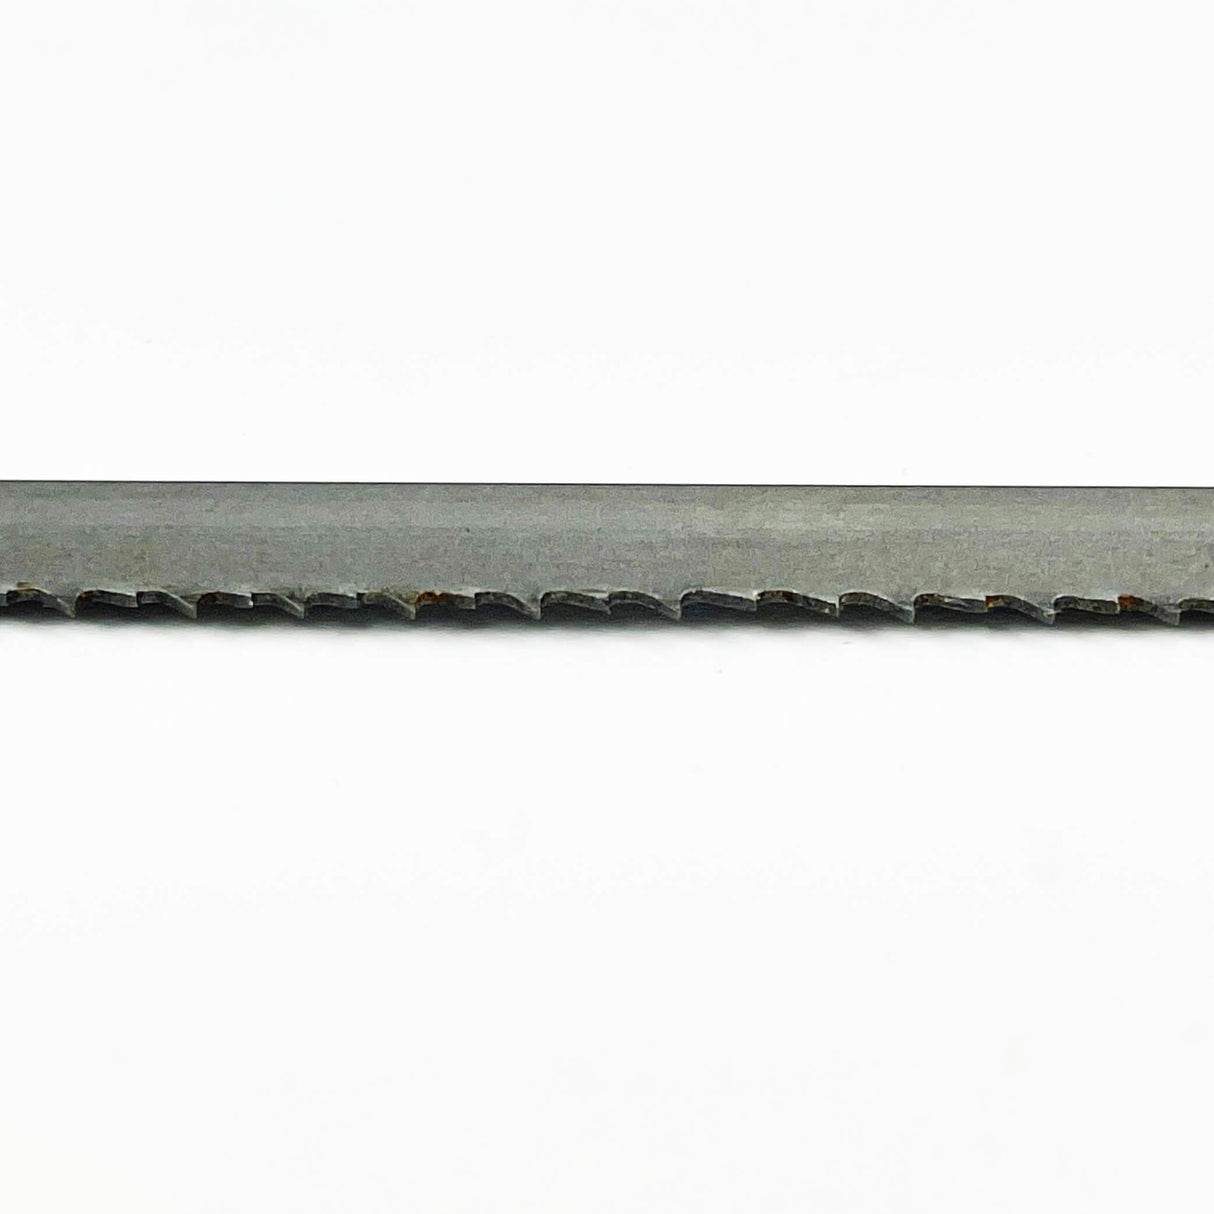 Sega a nastro bimetallica COBALT M42 da 3.345 mm di lunghezza x 13 mm di larghezza – Confezione da 2 lame